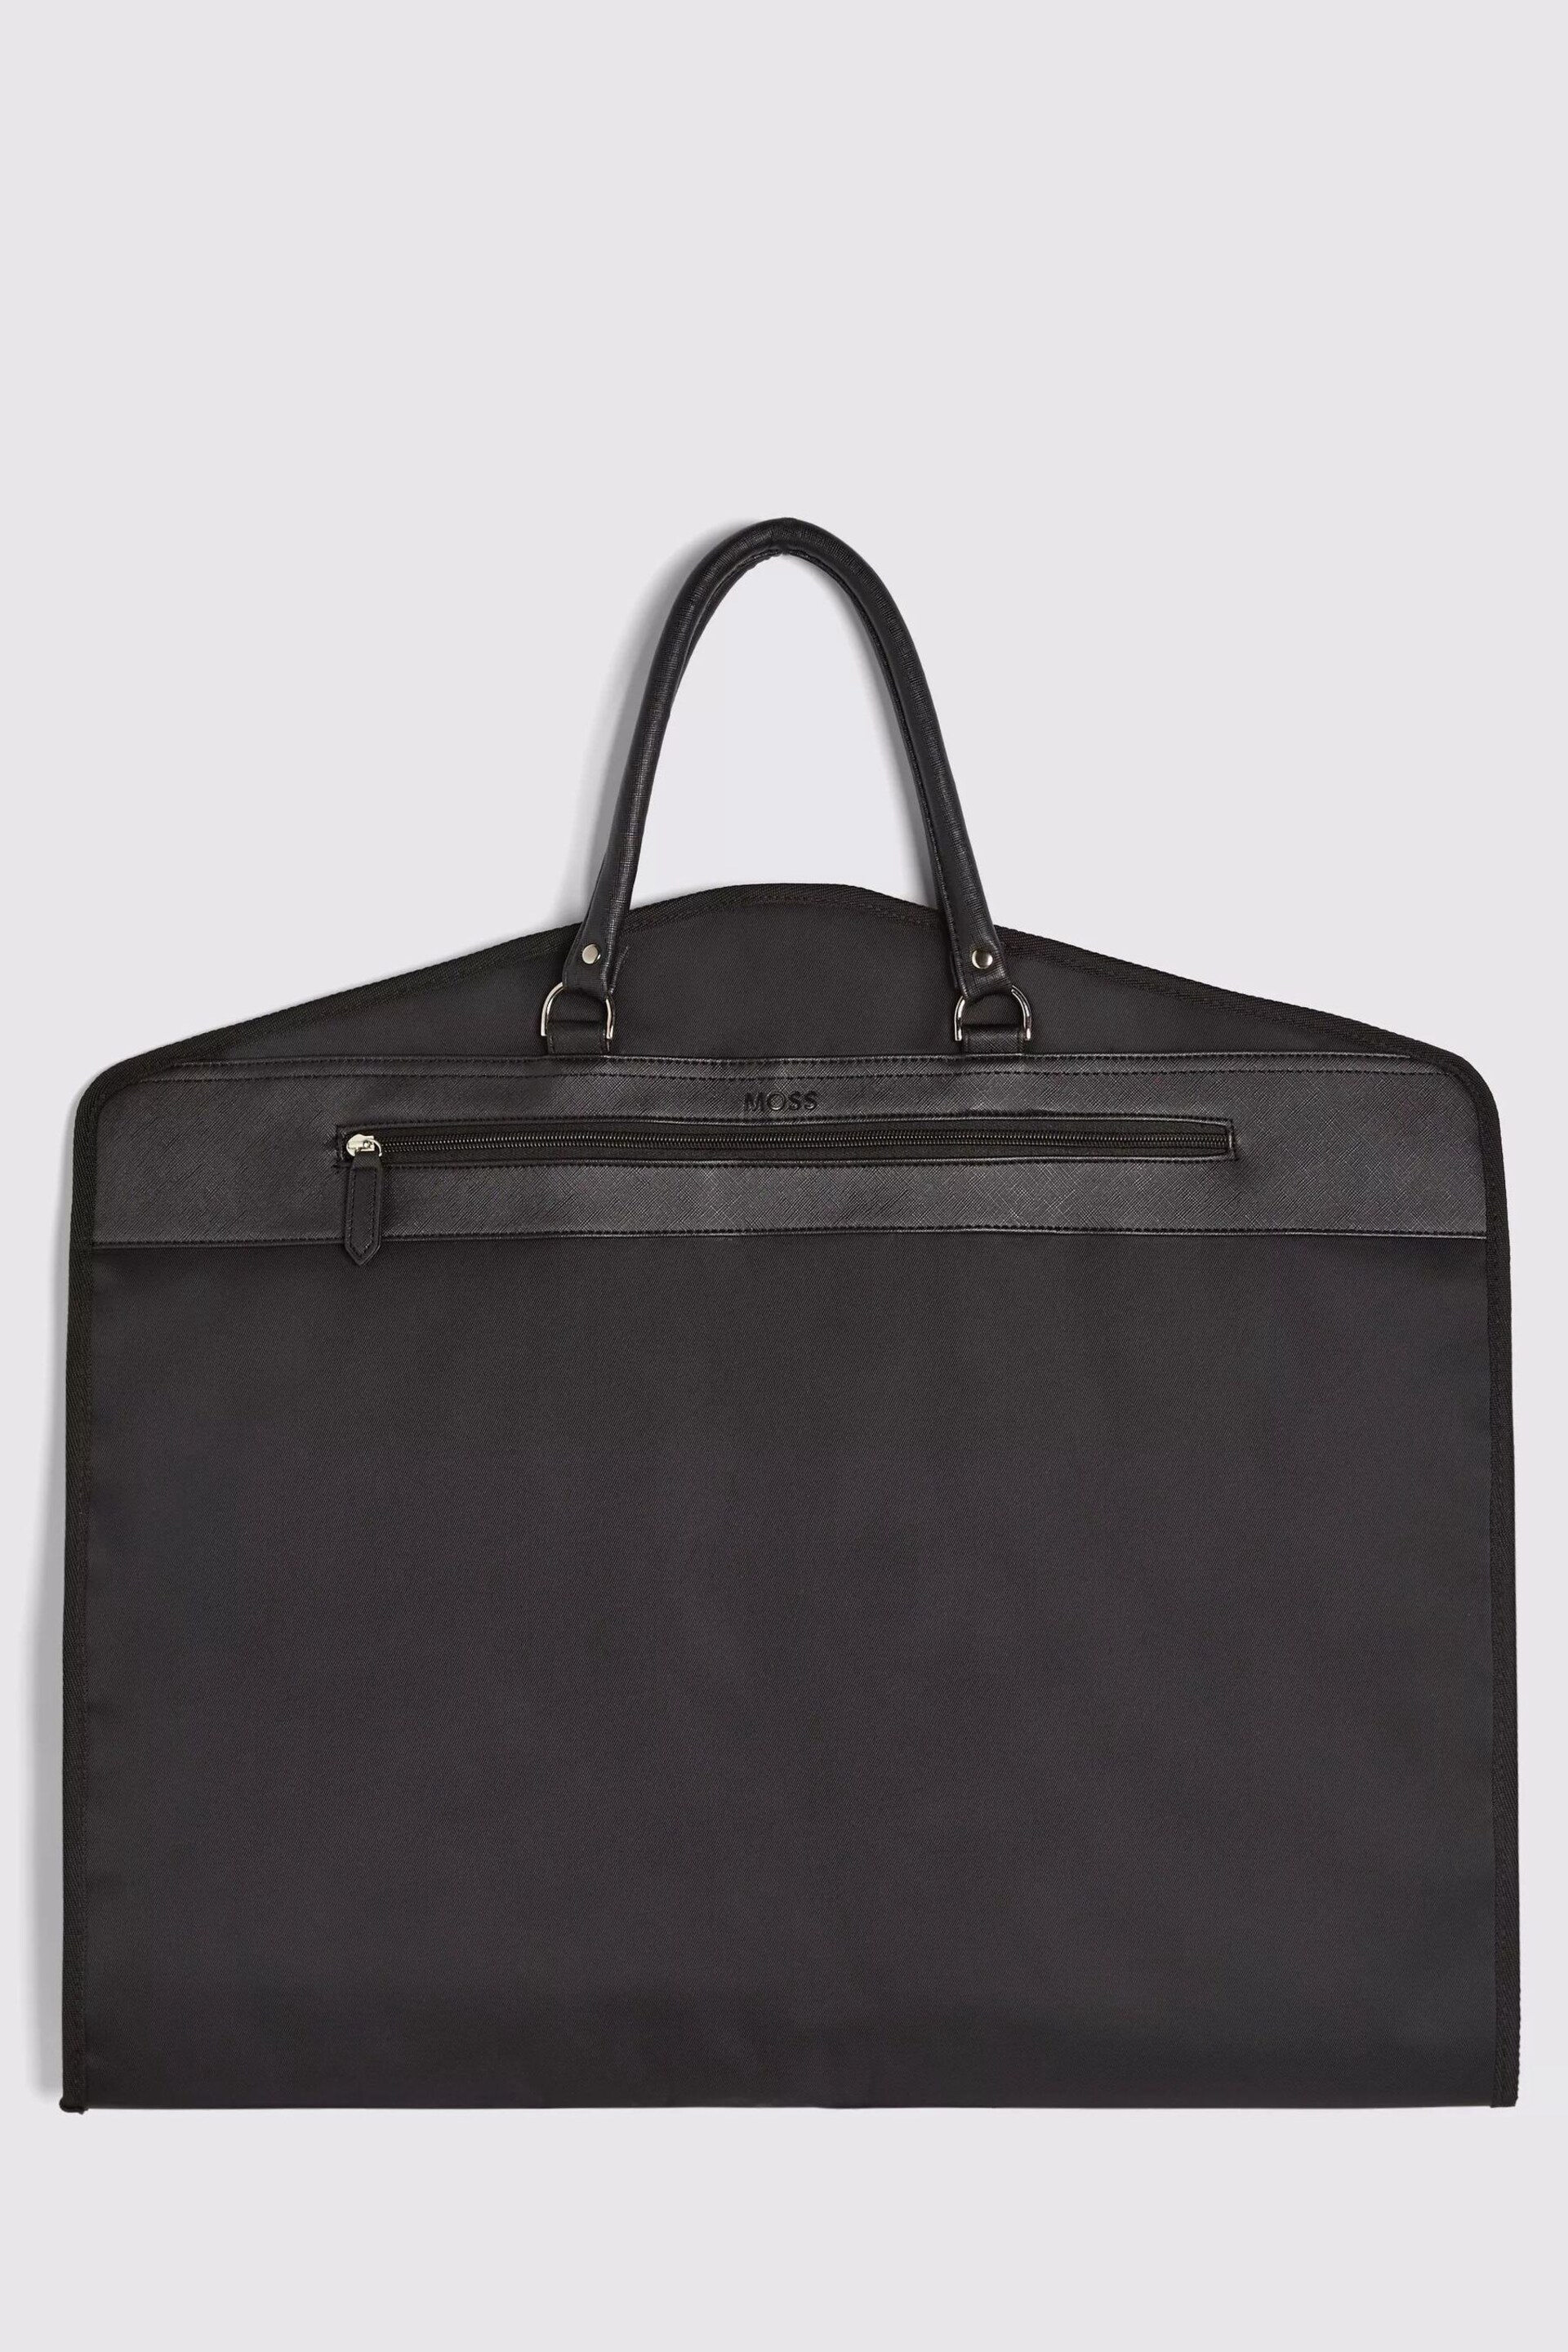 MOSS Saffiano Premium Suit Carrier 2.0 Black Bag - Image 1 of 4